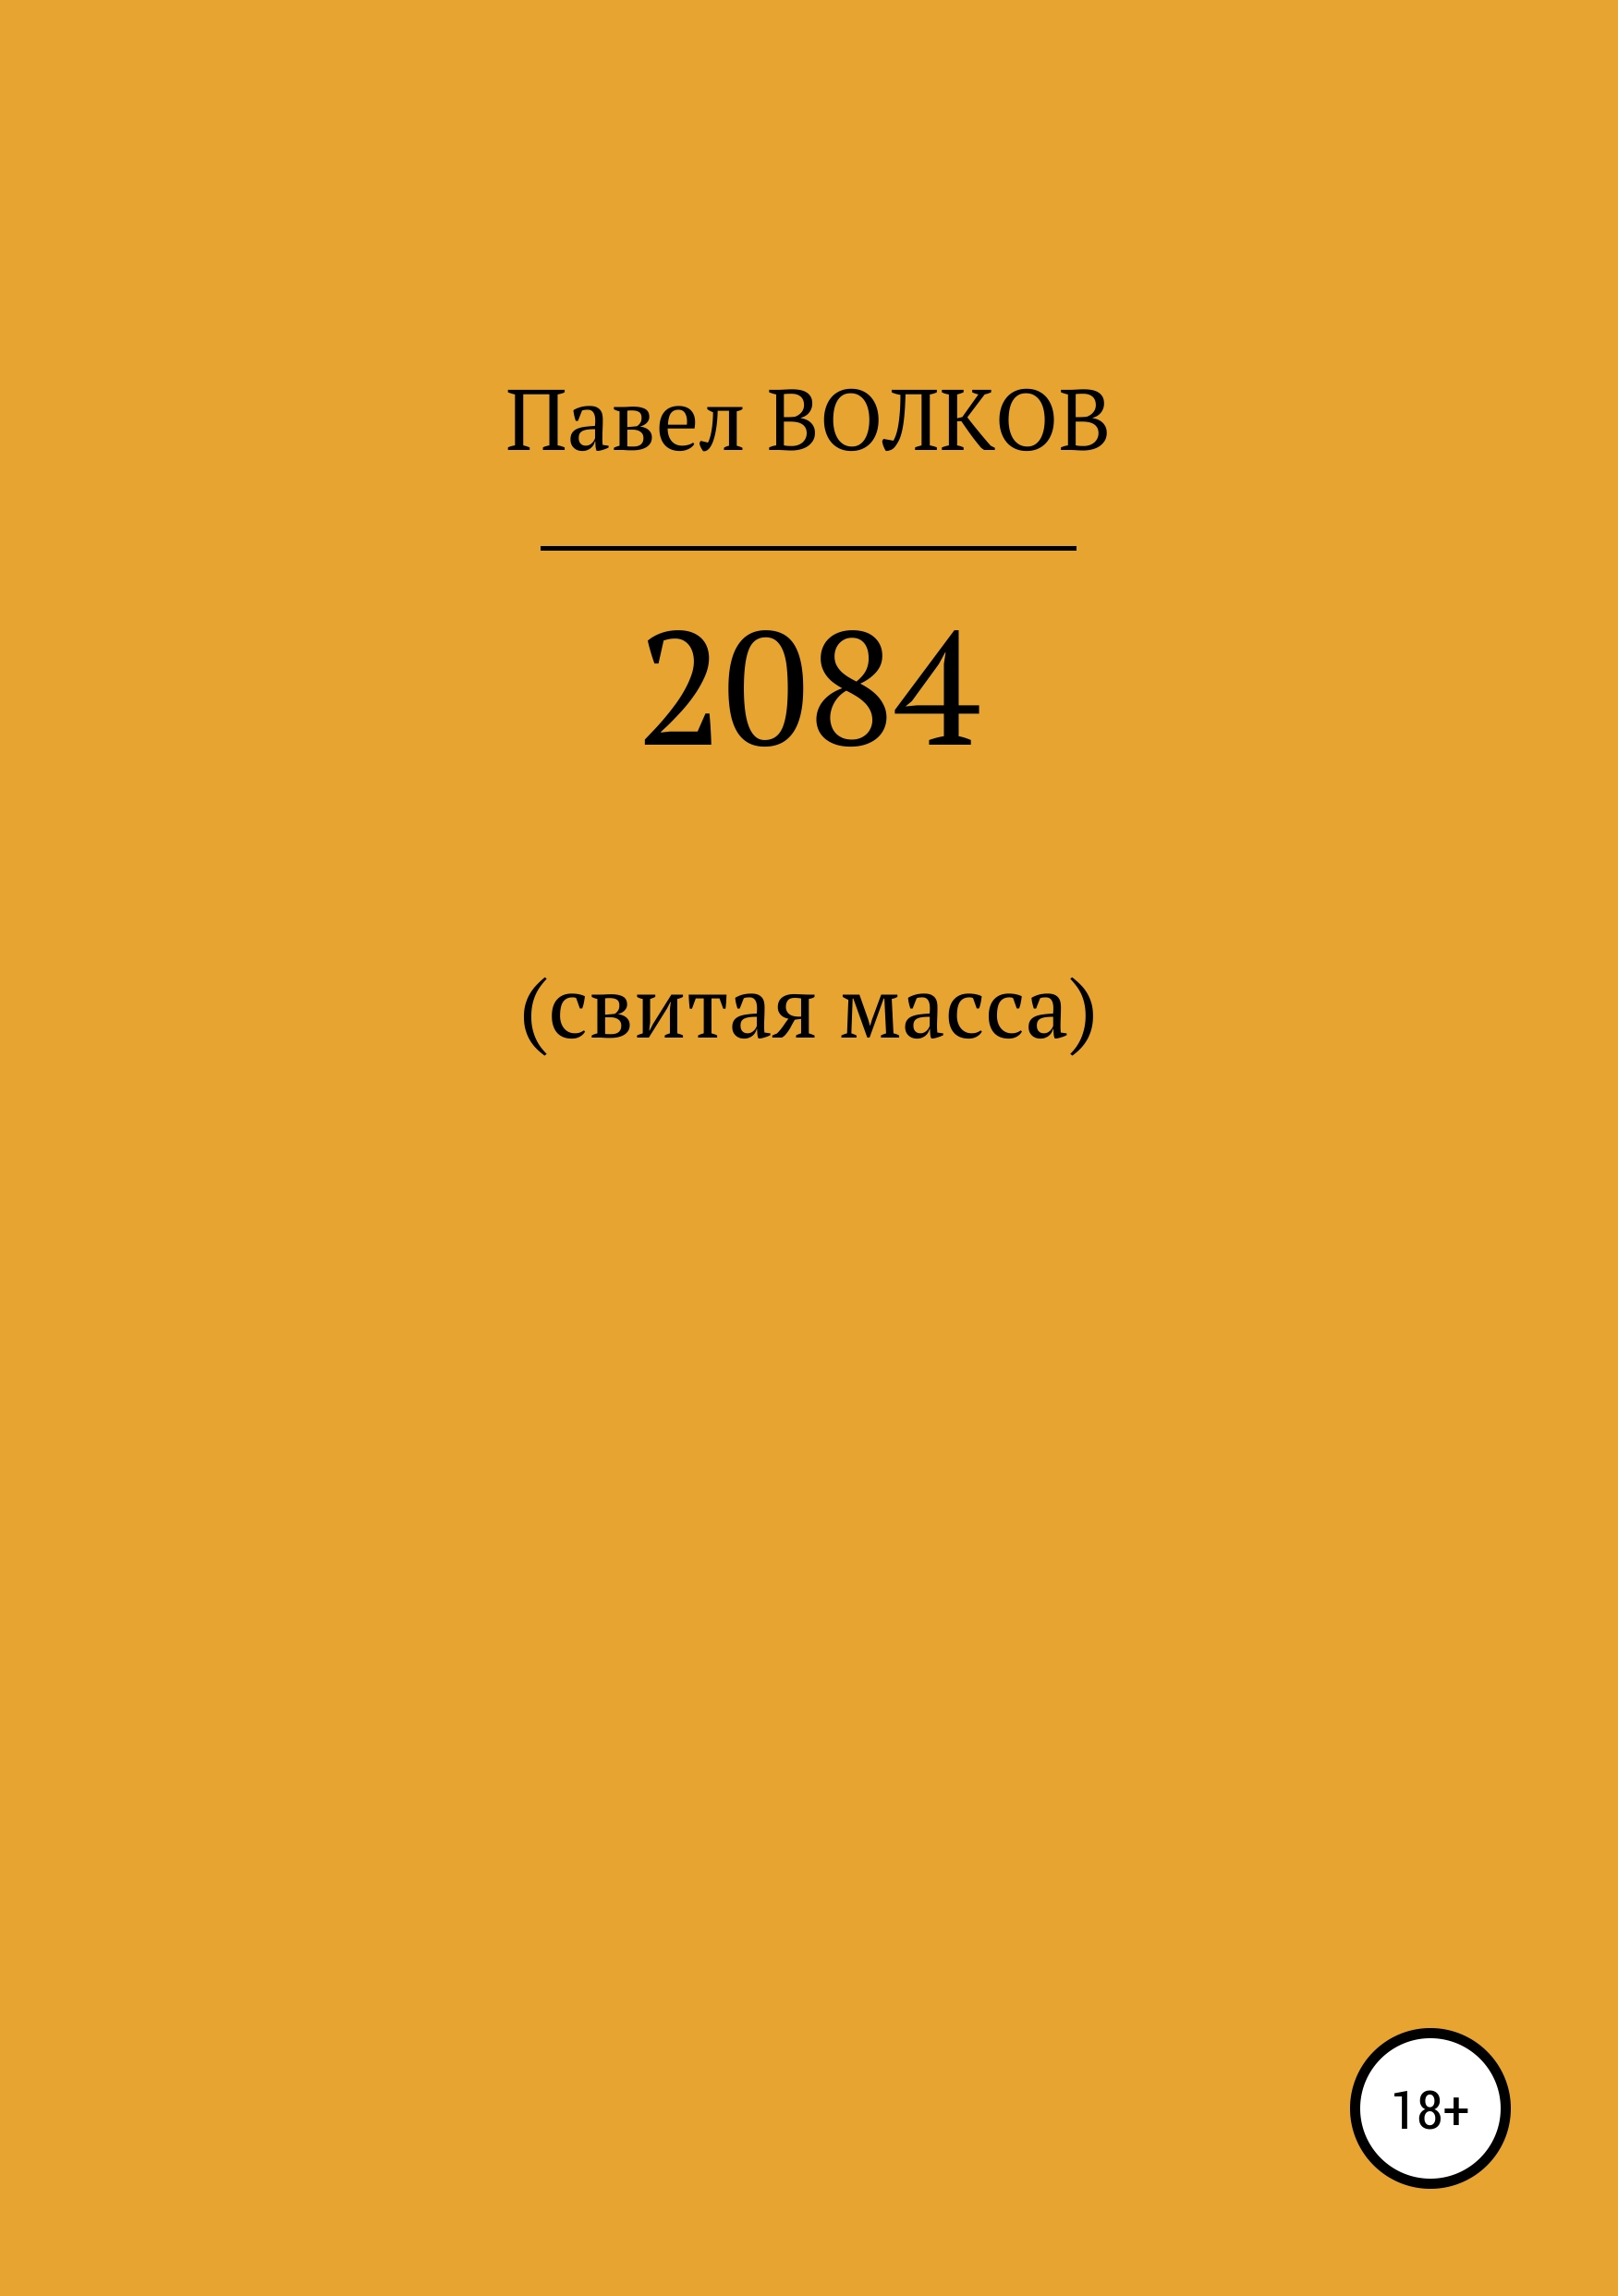 Книга 2084 (свитая масса) из серии , созданная Павел Волков, может относится к жанру Историческая фантастика, Публицистика: прочее, Ужасы и Мистика. Стоимость электронной книги 2084 (свитая масса) с идентификатором 42649708 составляет 0 руб.